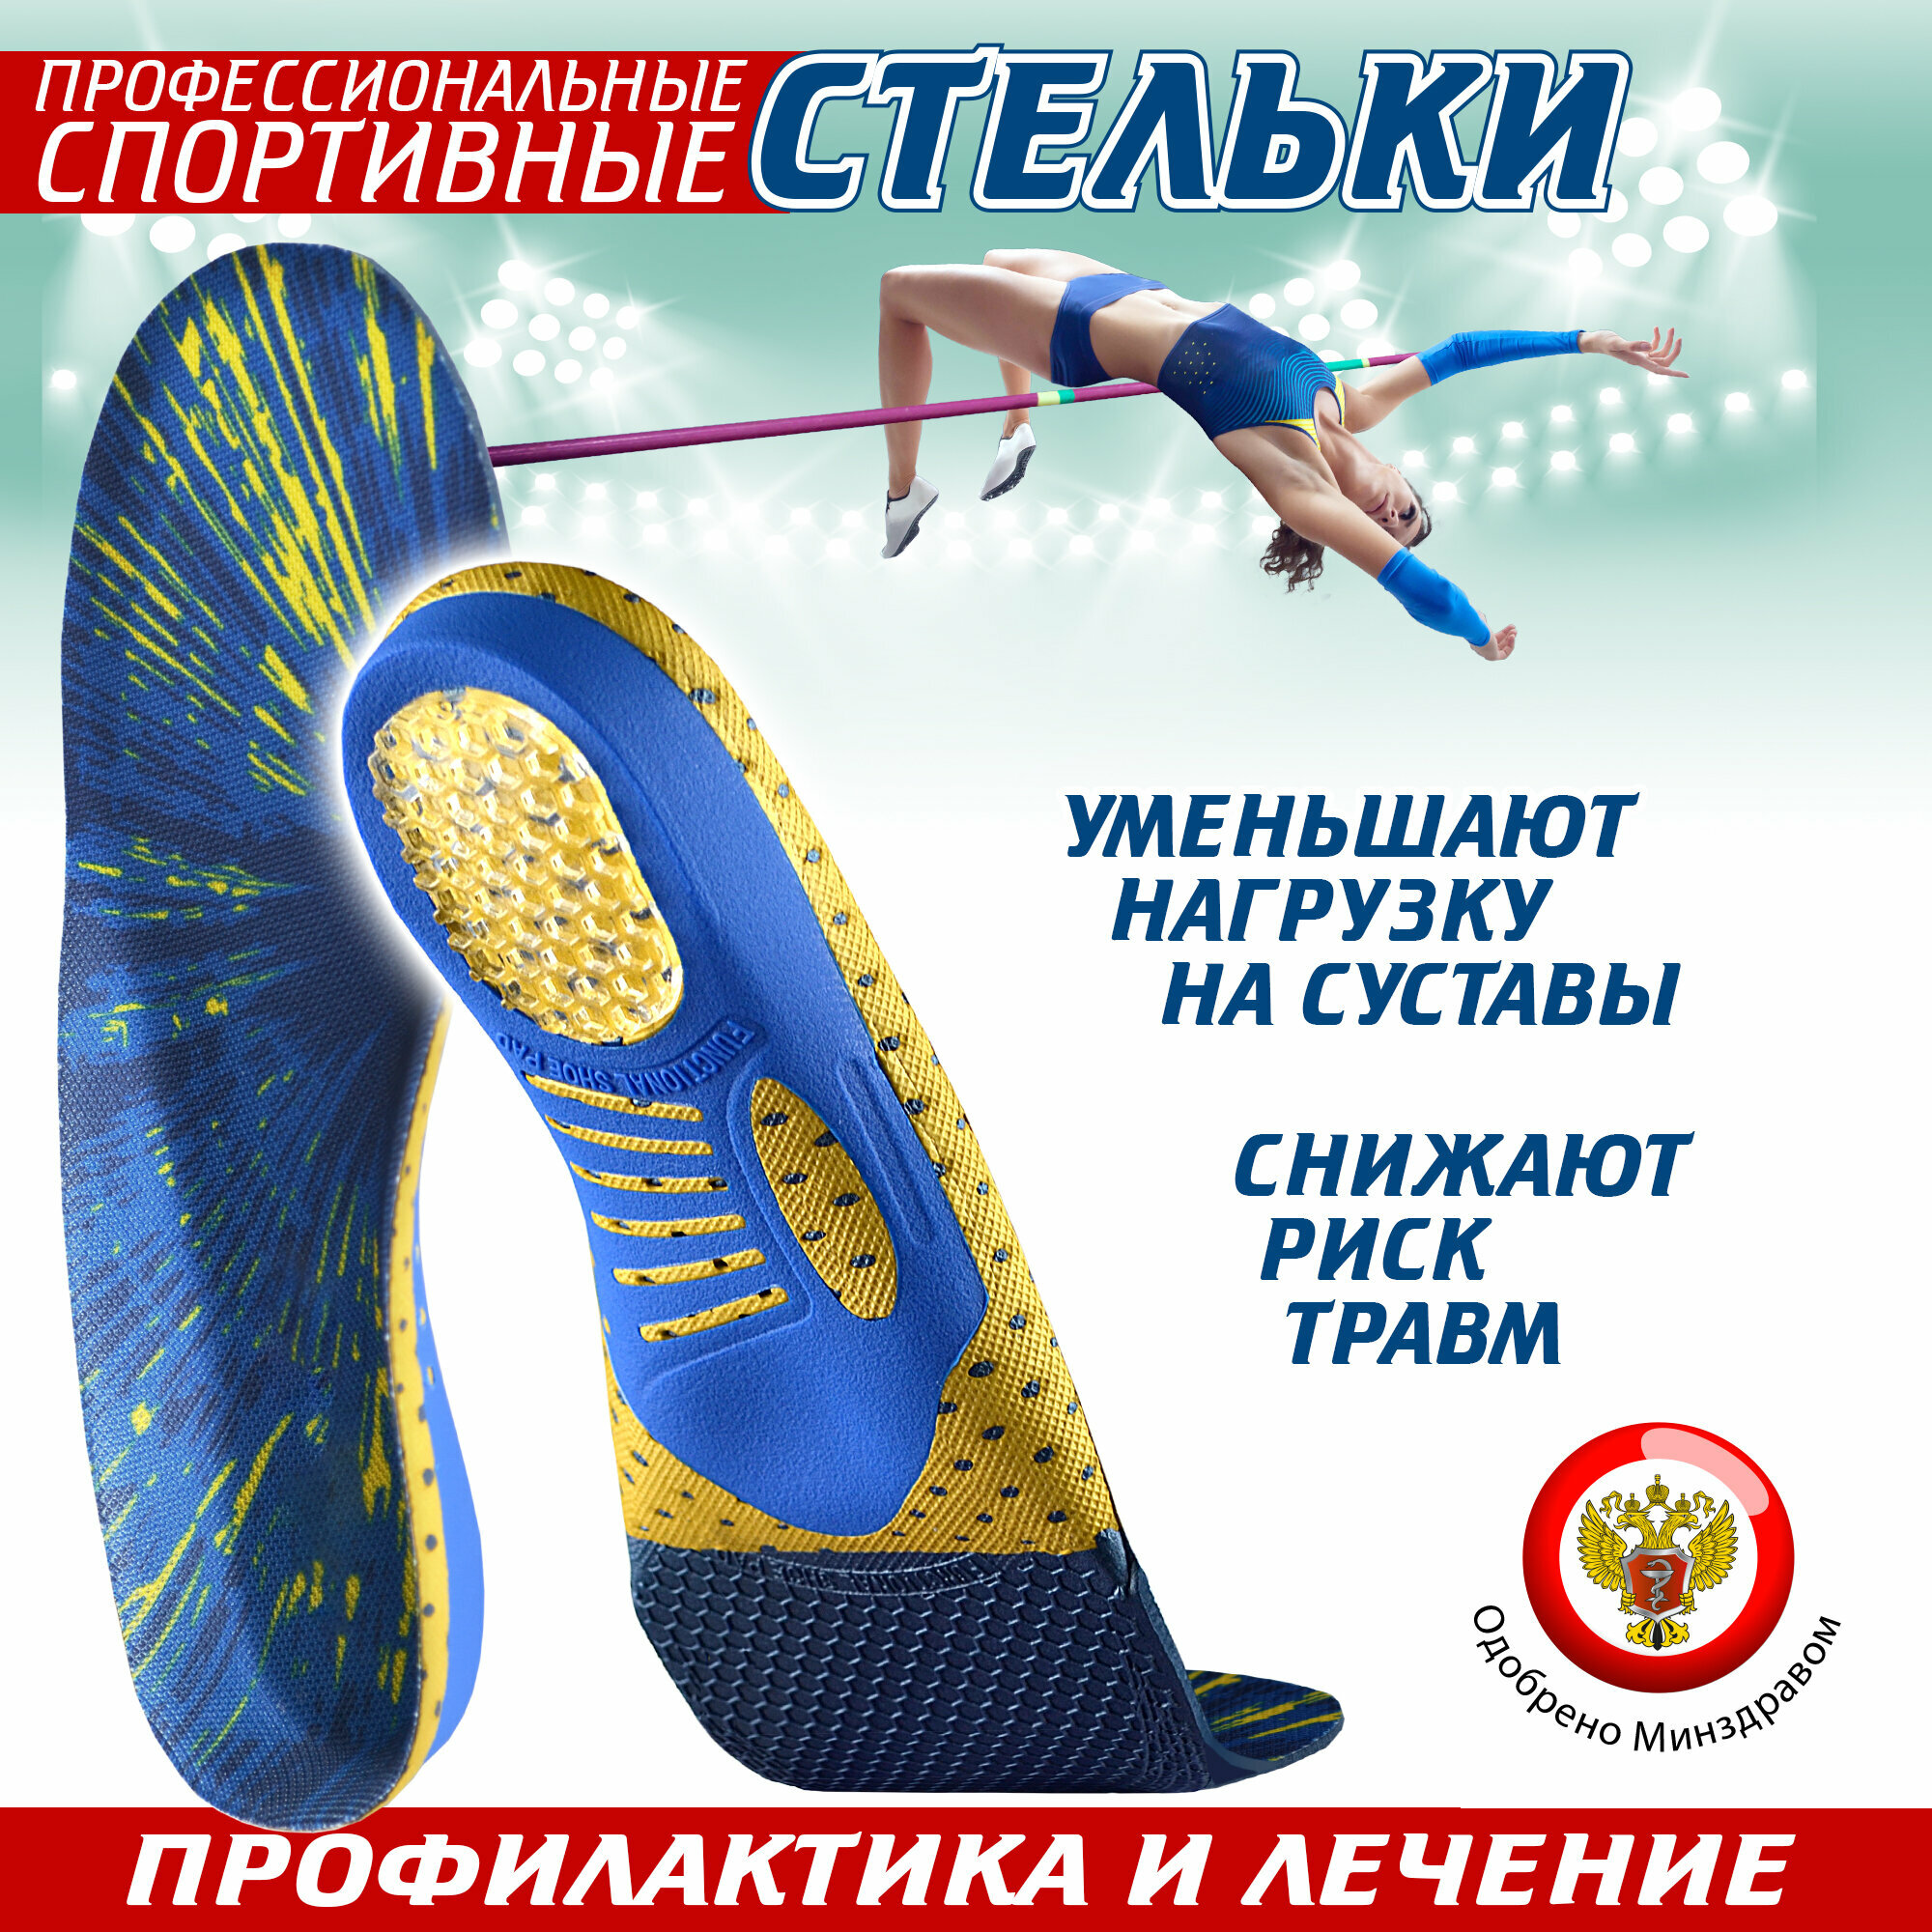 Ортопедические стельки спортивные Sport, для обуви (42)